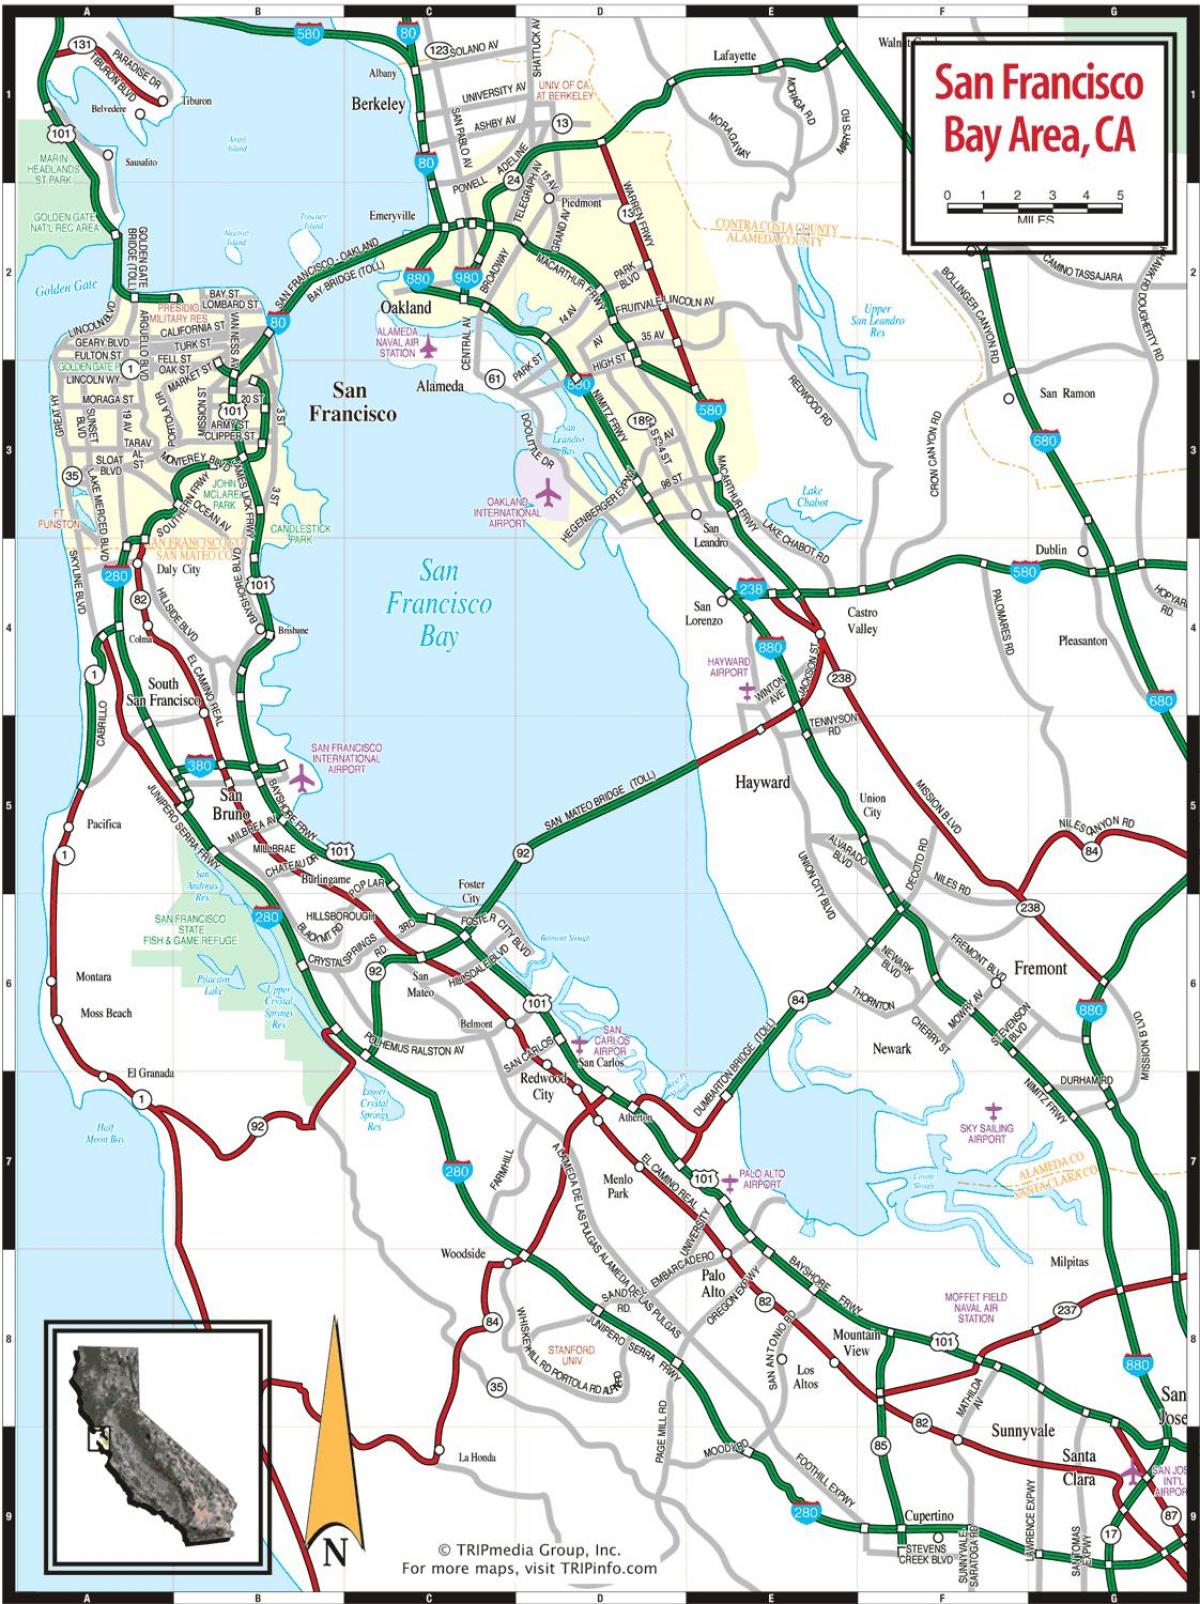 χάρτης της San Francisco bay area